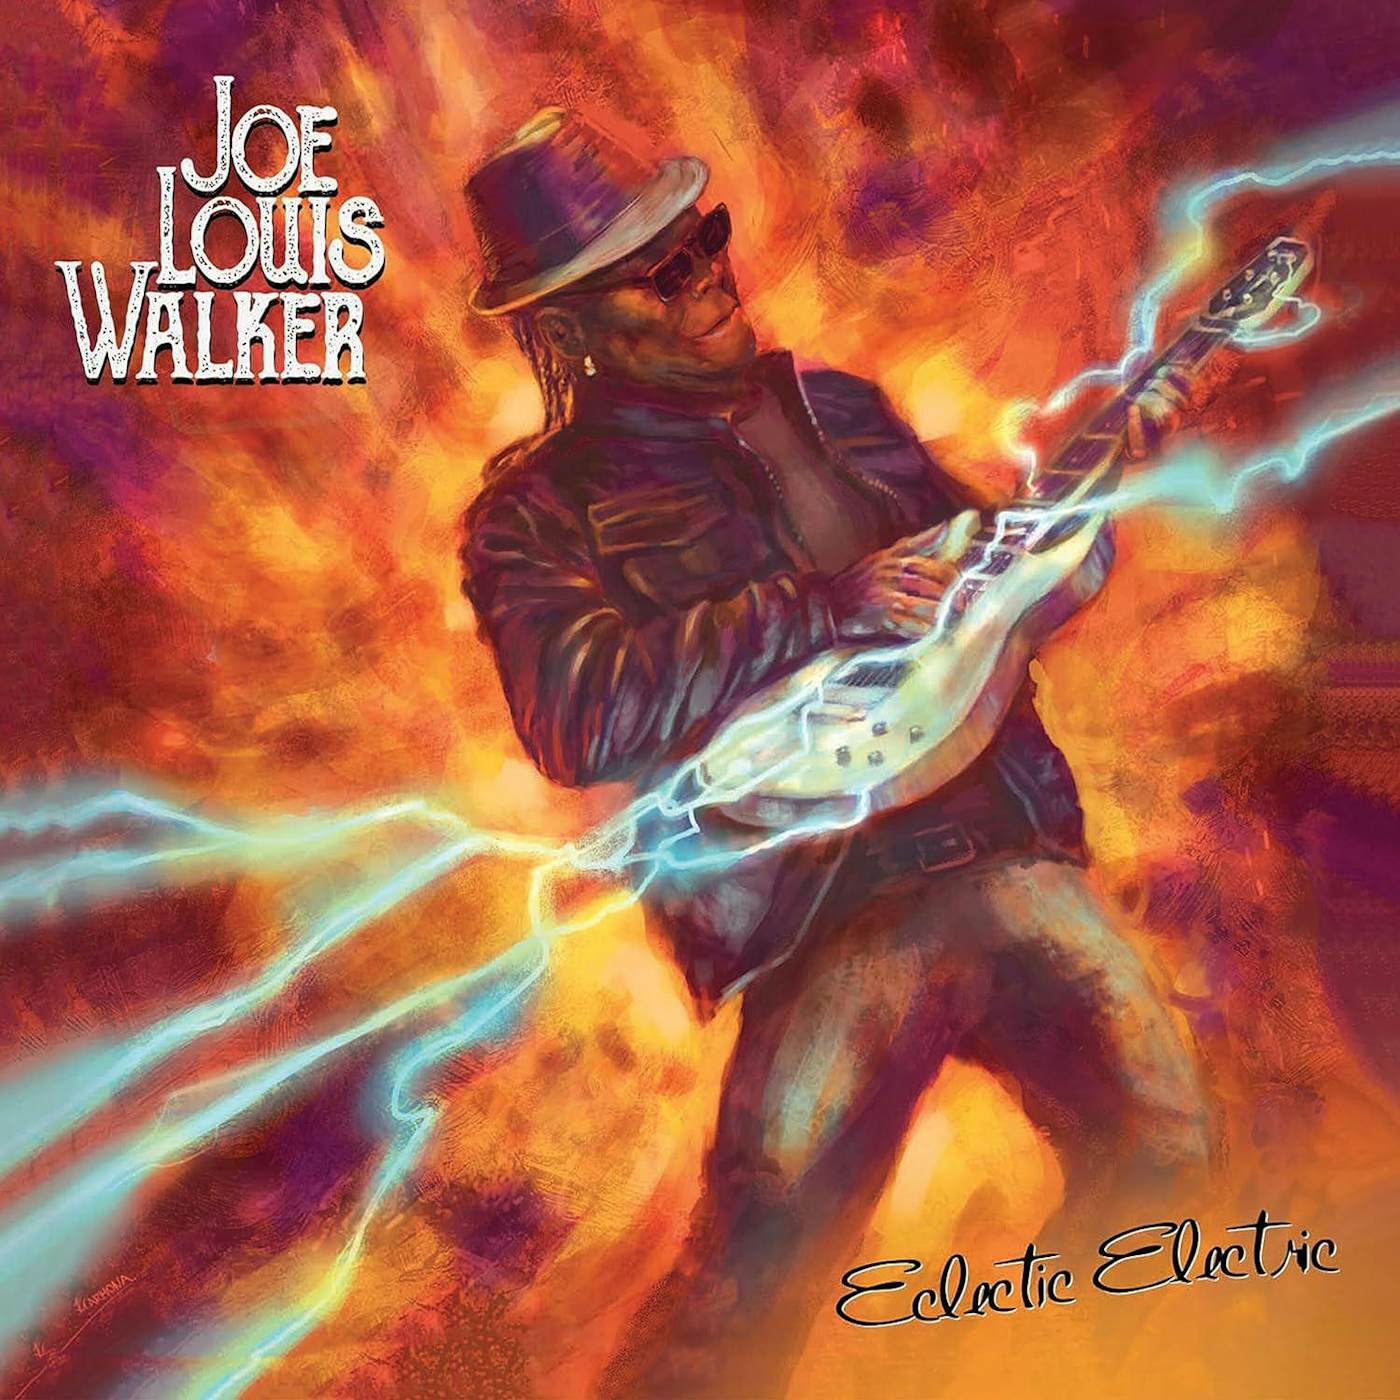 Joe Louis Walker Eclectic Electric Vinyl Record